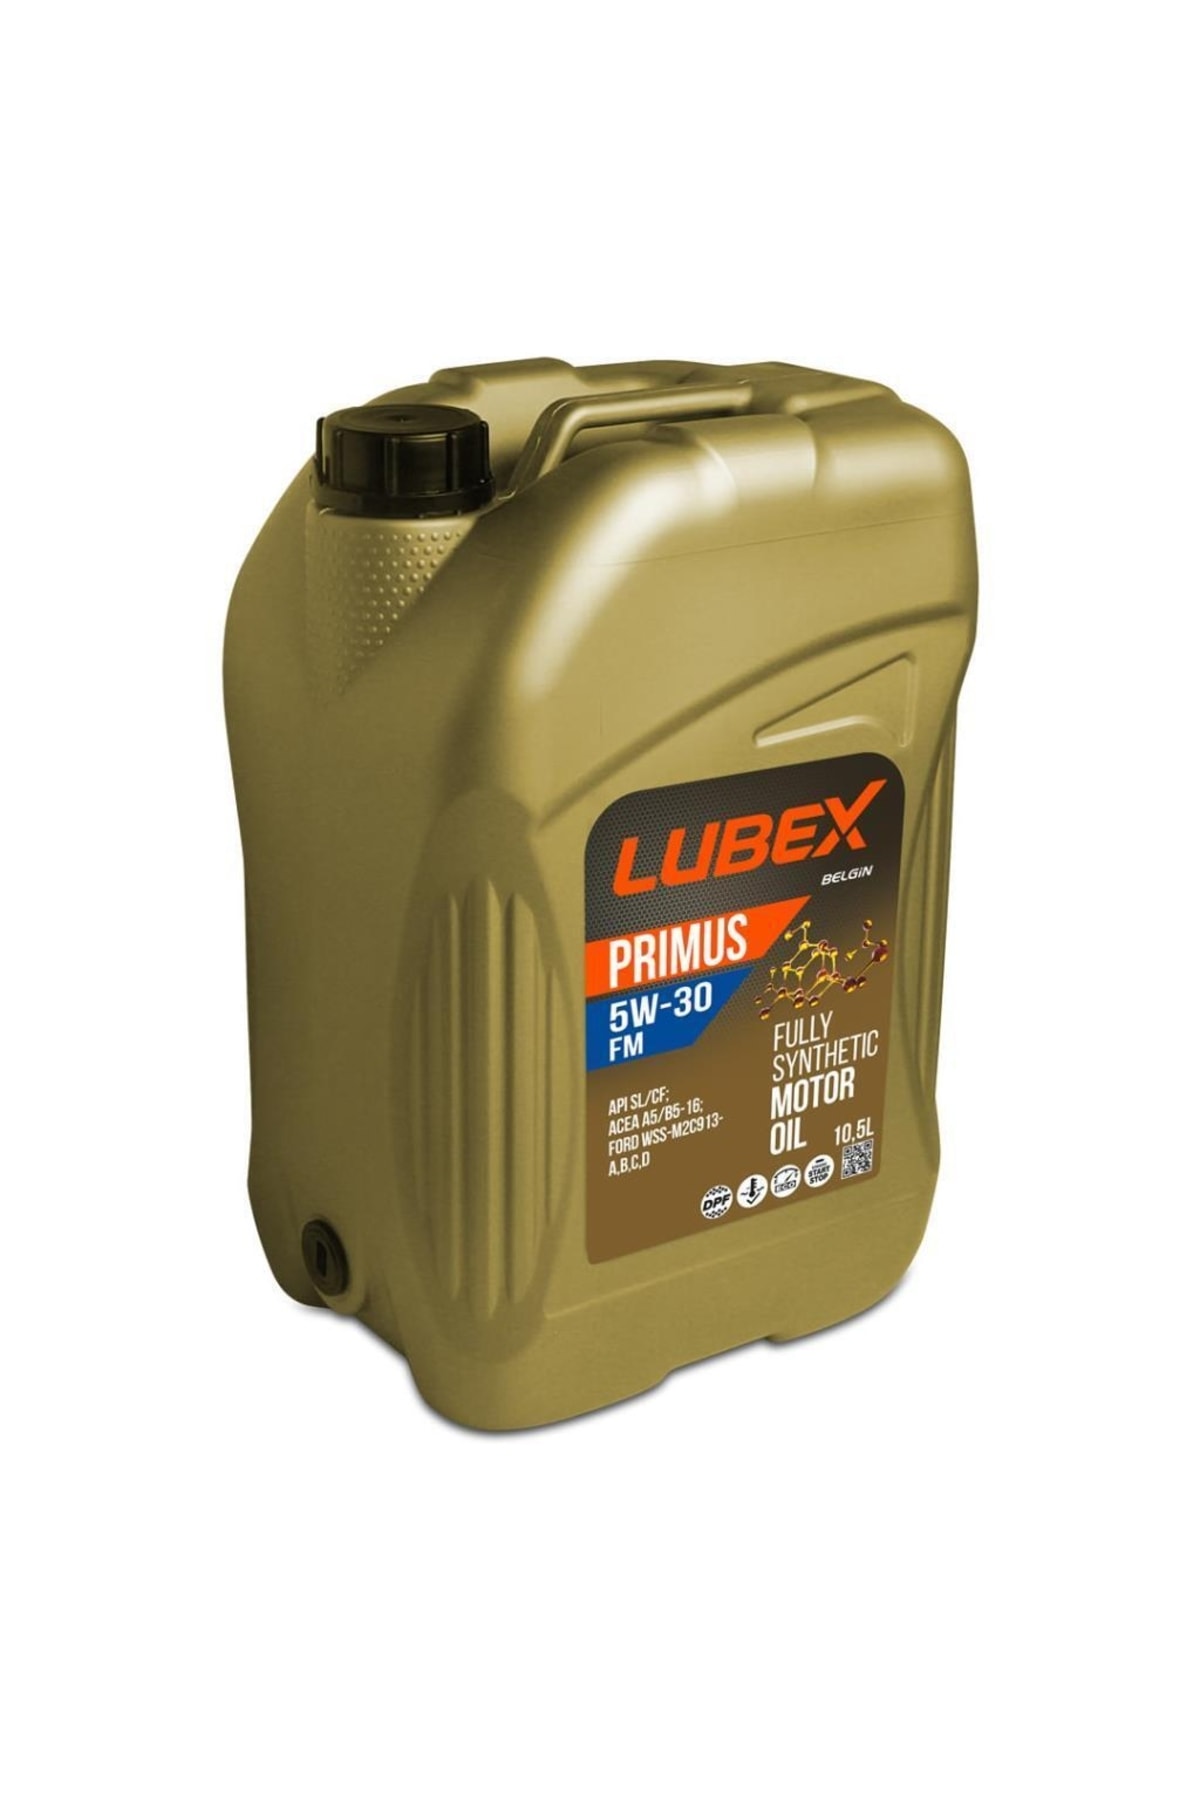 LUBEX  motor yagi primus fm 5w30 105 lt 034 1315 0105